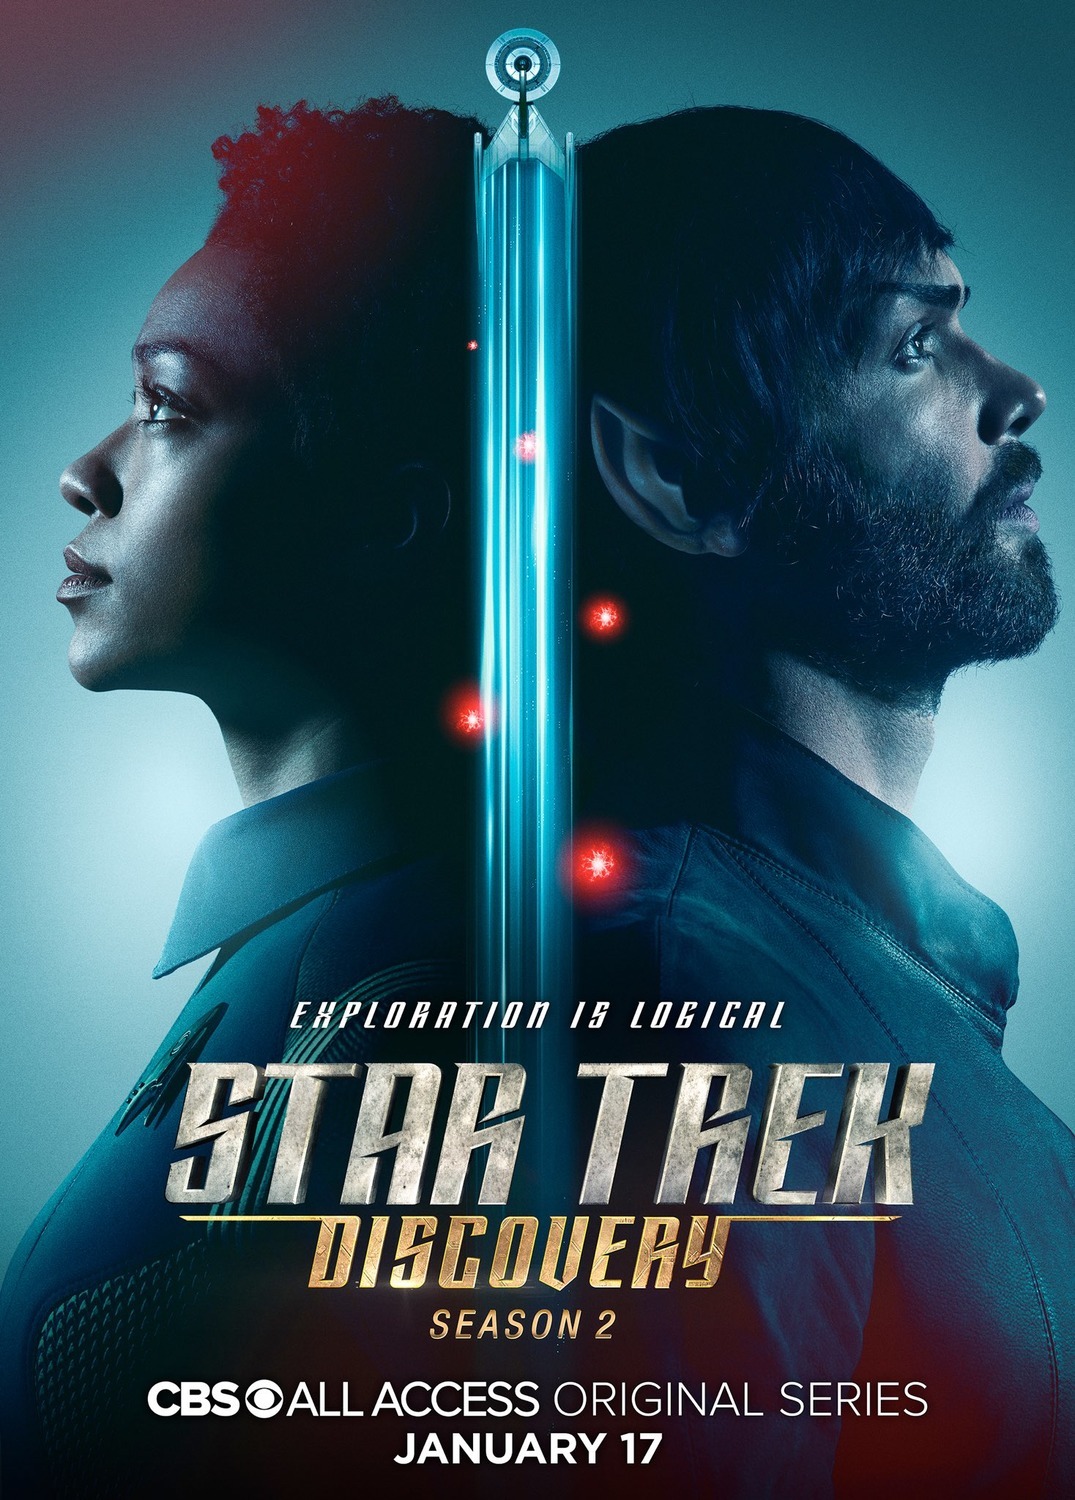 ดูหนังออนไลน์ Star Trek Discovery Season 2 EP.12 สตาร์ เทรค ดิสคัฟเวอรี่ ซีซั่นที่ 2 ตอนที่ 12